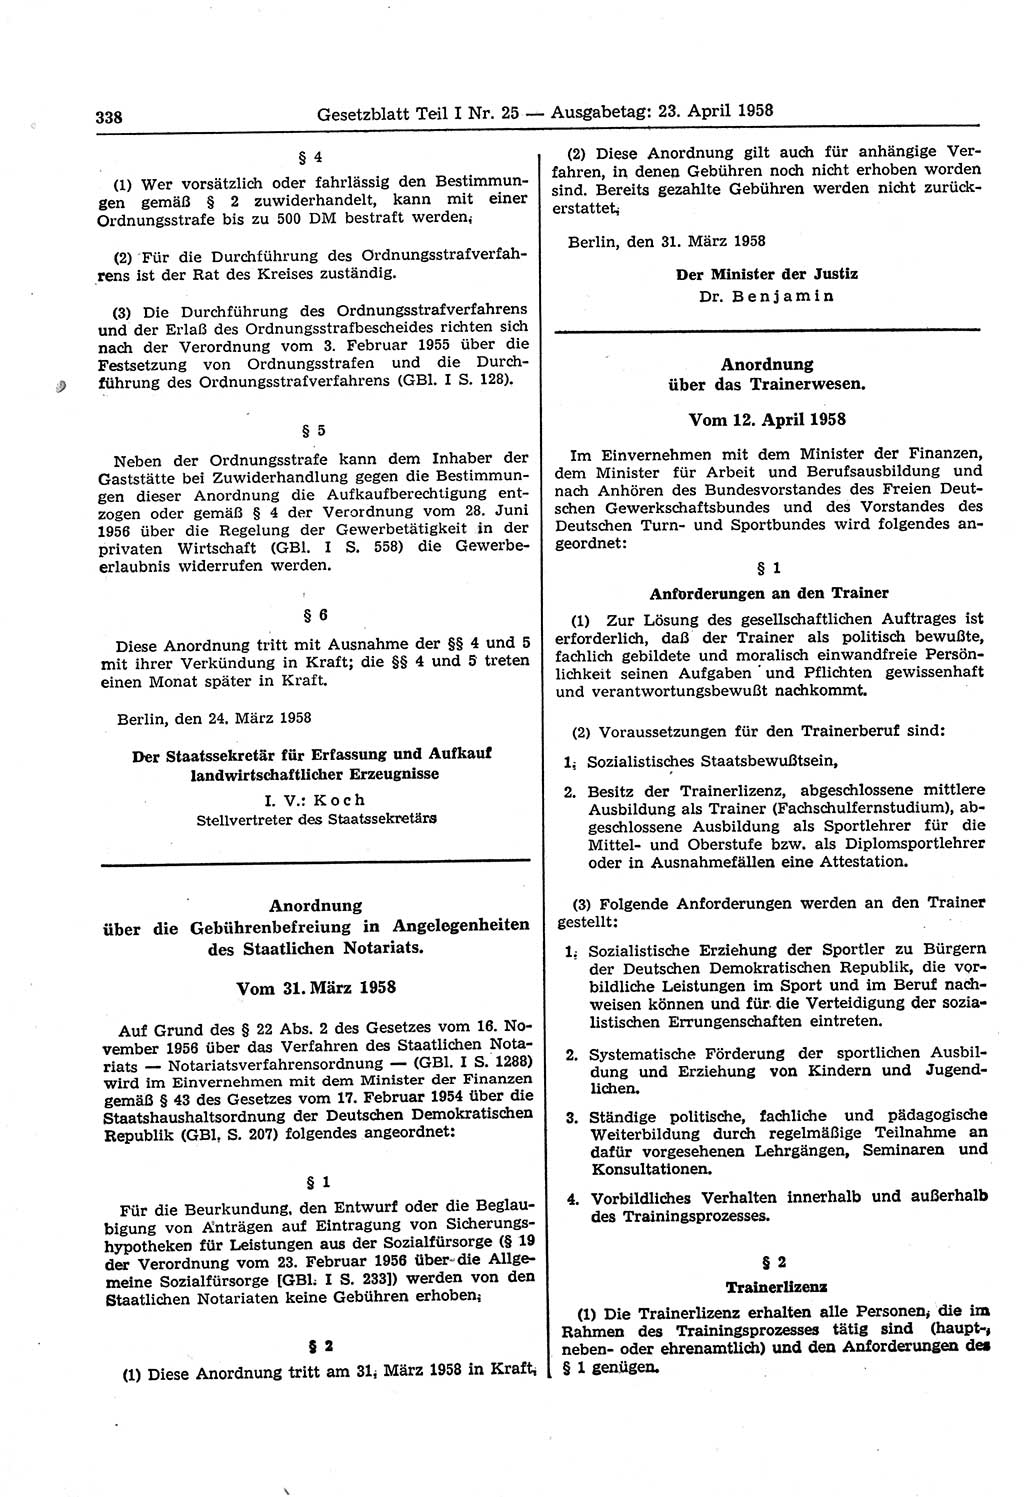 Gesetzblatt (GBl.) der Deutschen Demokratischen Republik (DDR) Teil Ⅰ 1958, Seite 338 (GBl. DDR Ⅰ 1958, S. 338)